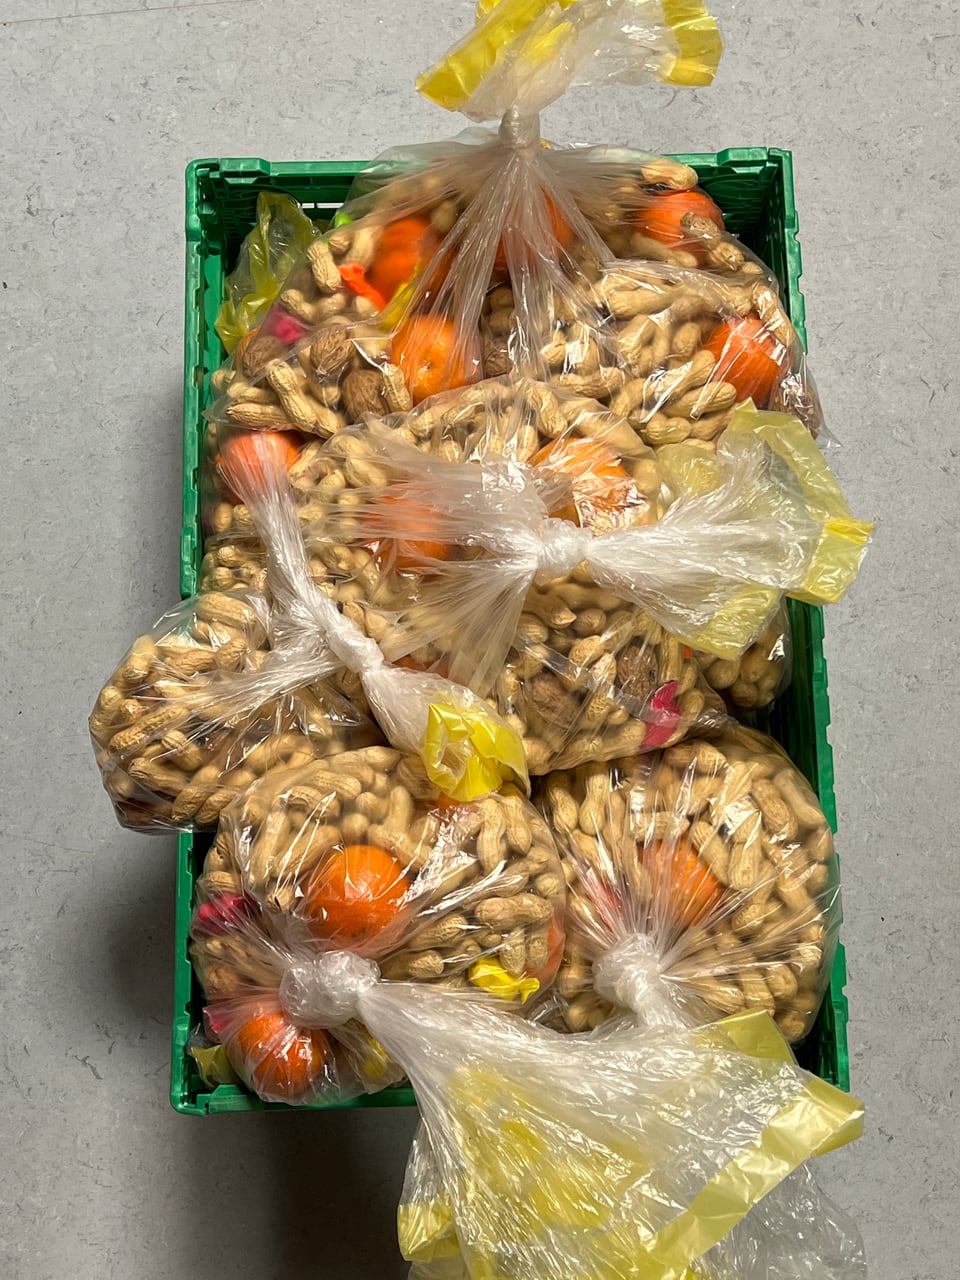 Eine Kiste mit Säcken voller Mandarinen und Nüsschen